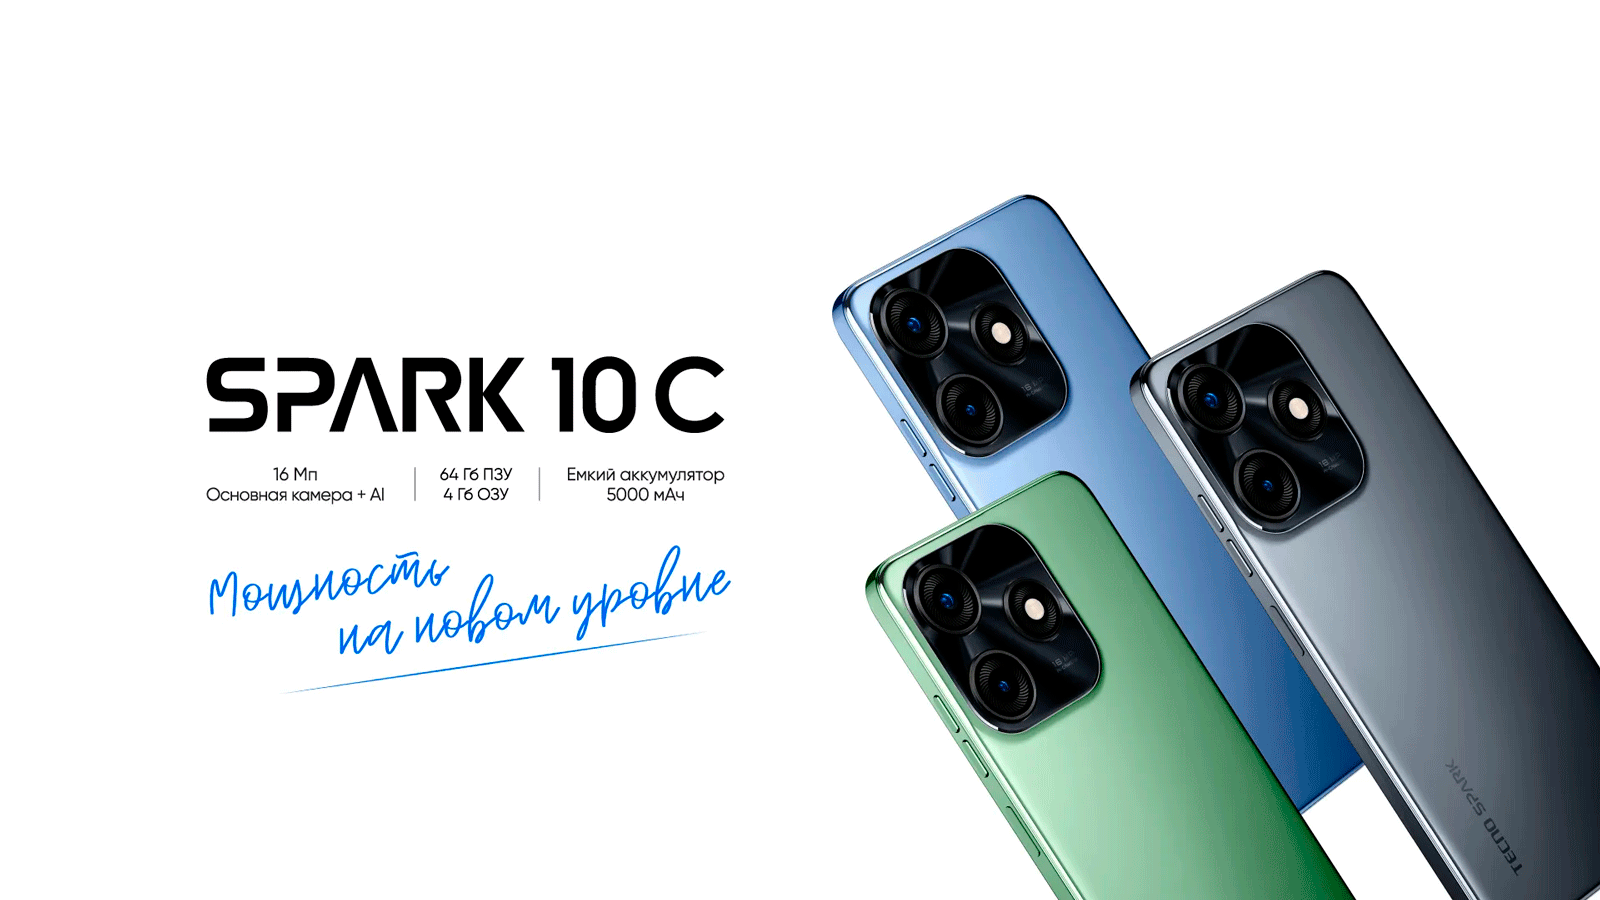 Spark 10C